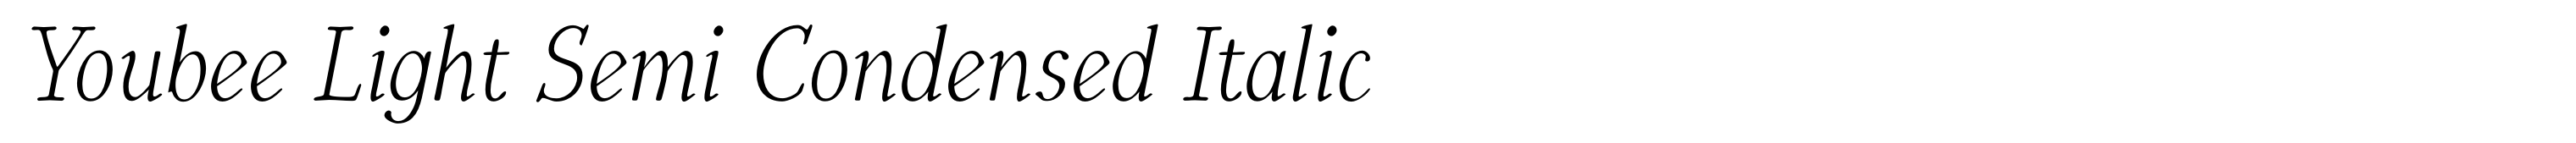 Youbee Light Semi Condensed Italic